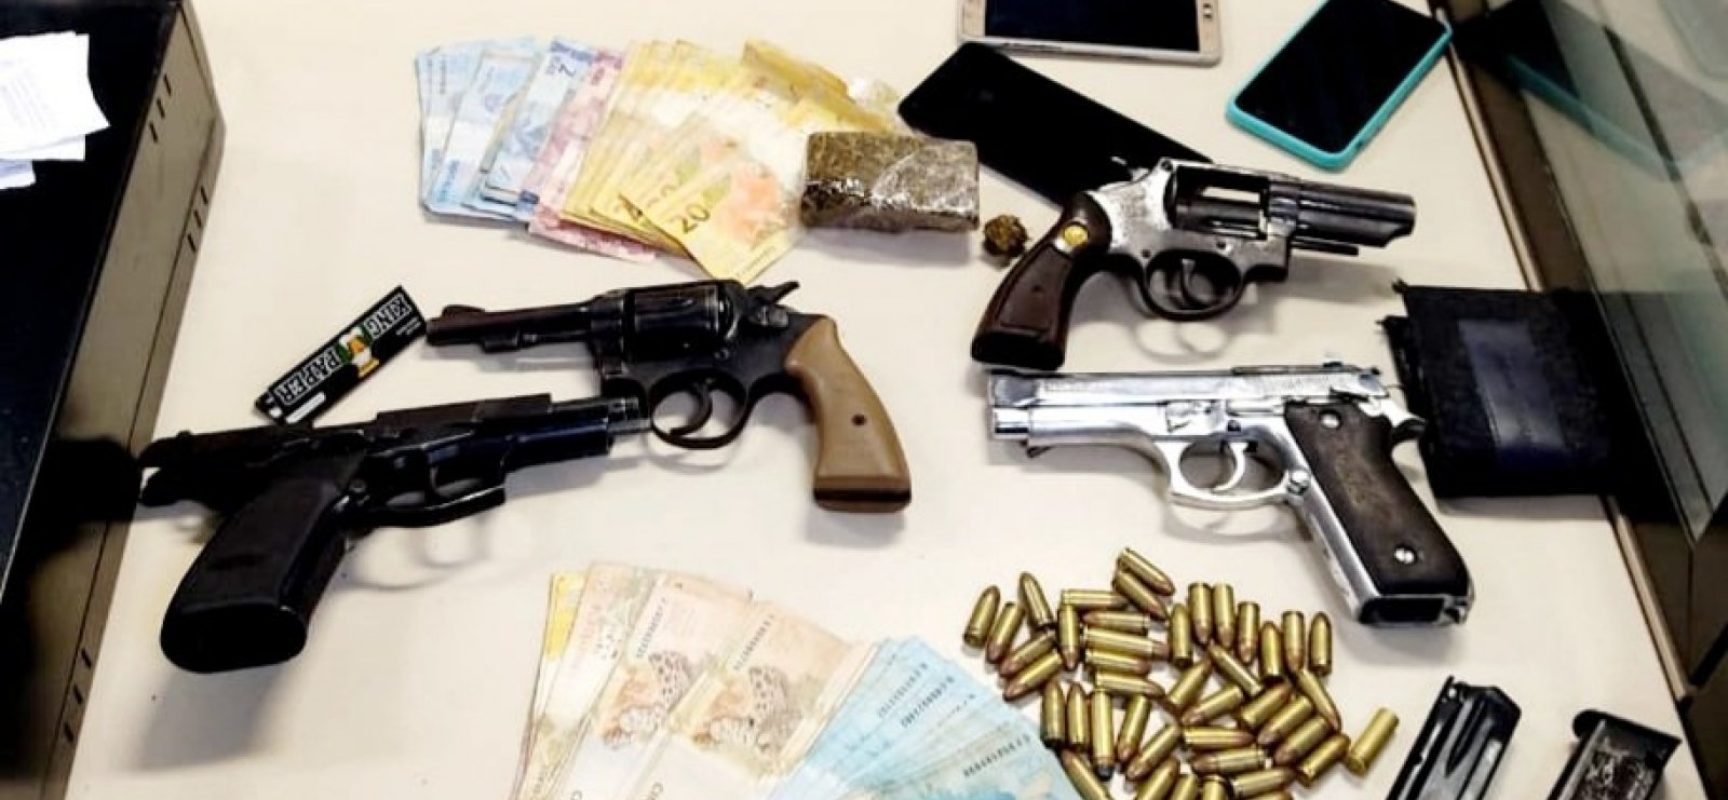 Operação da PM apreende dez armas, munições e drogas em Feira